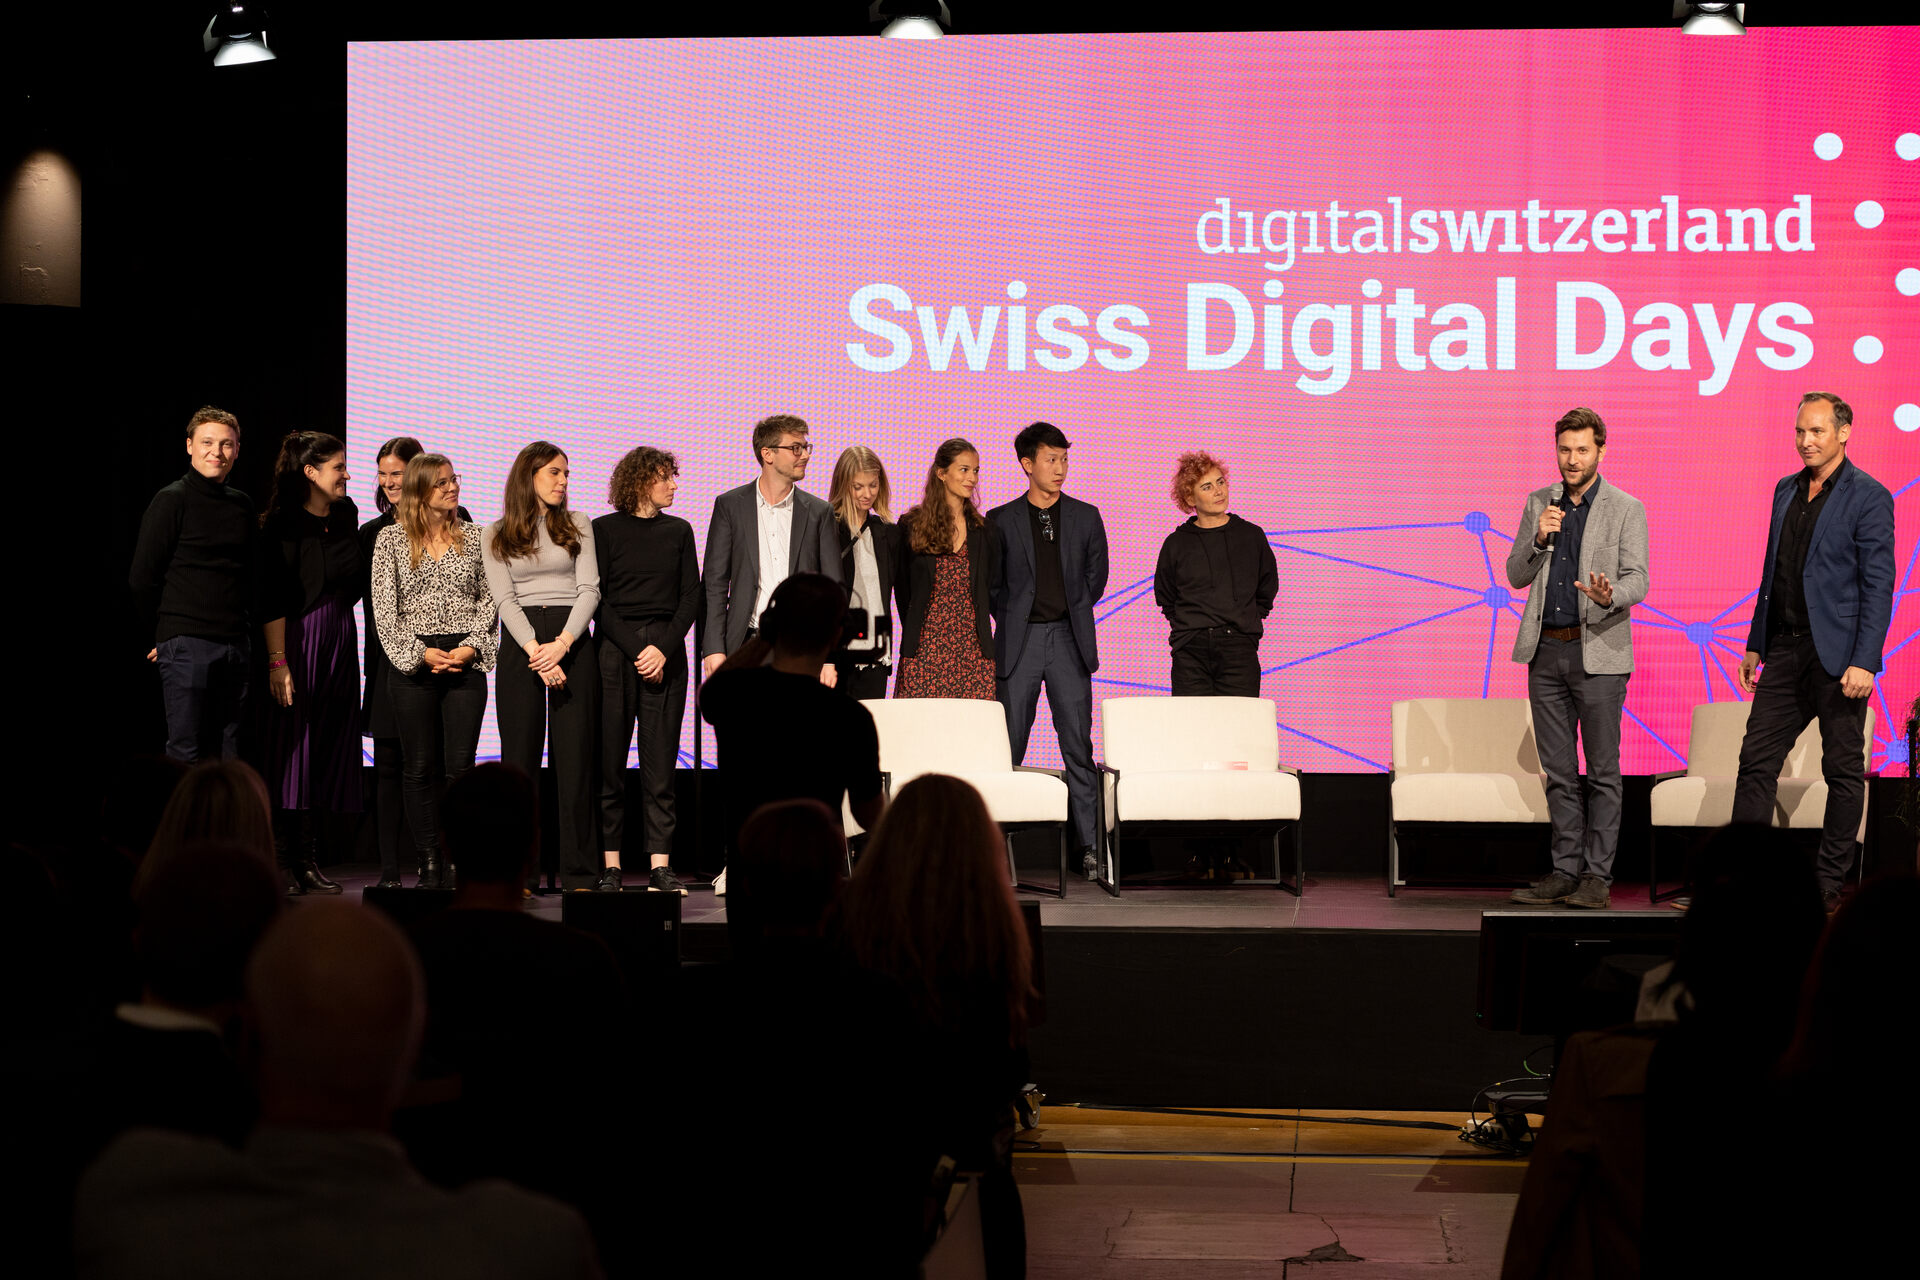 Swiss Digital Days: Acara penutupan "Swiss Digital Days" 2022 di Freiruum in Zug (Zug) pada 27 Oktober: tim penyelenggara digitalswitzerland